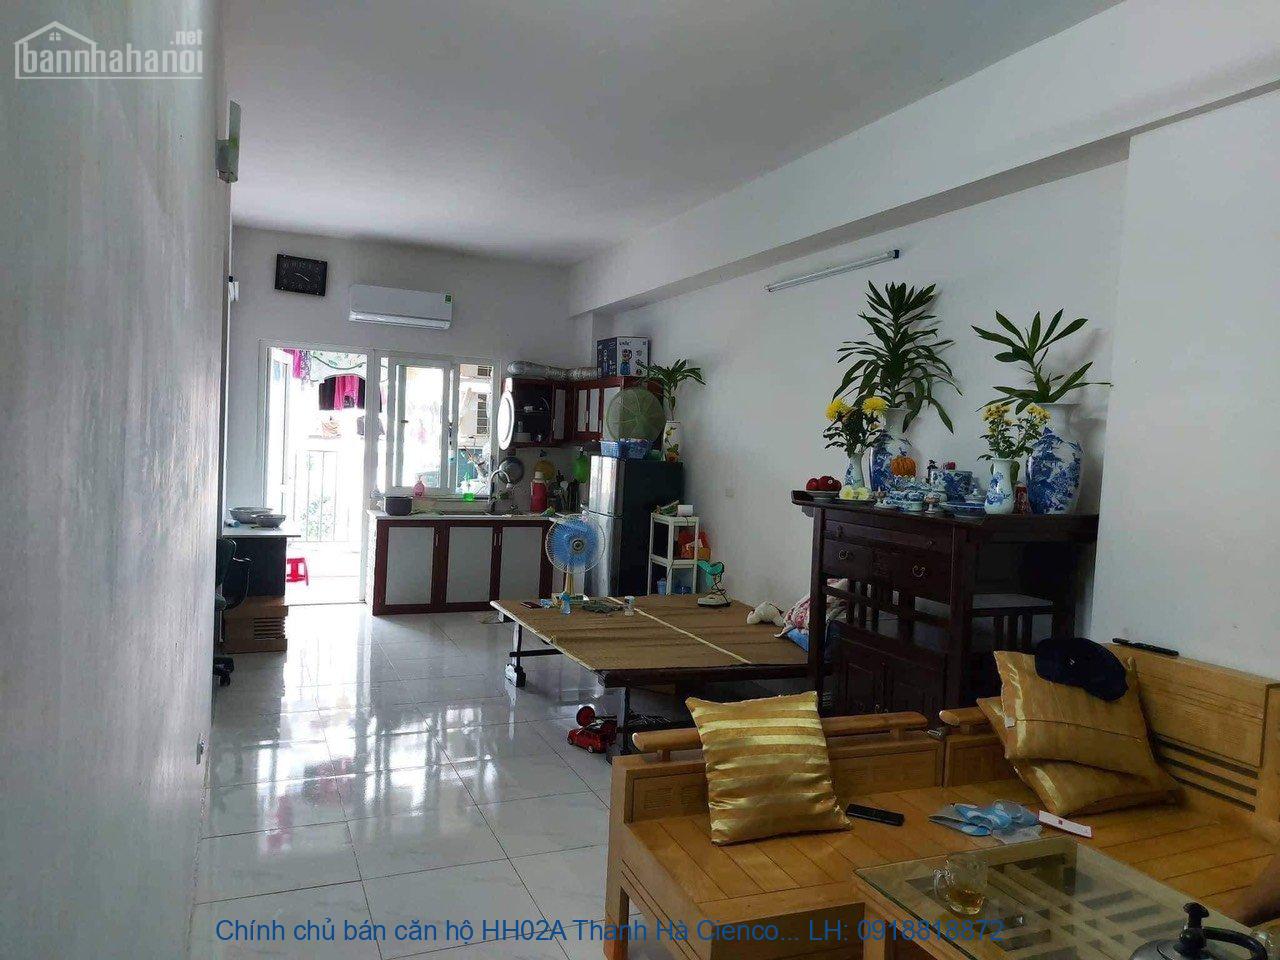 Chính chủ bán căn hộ HH02A Thanh Hà Cienco 5, Giá rẻ nhất